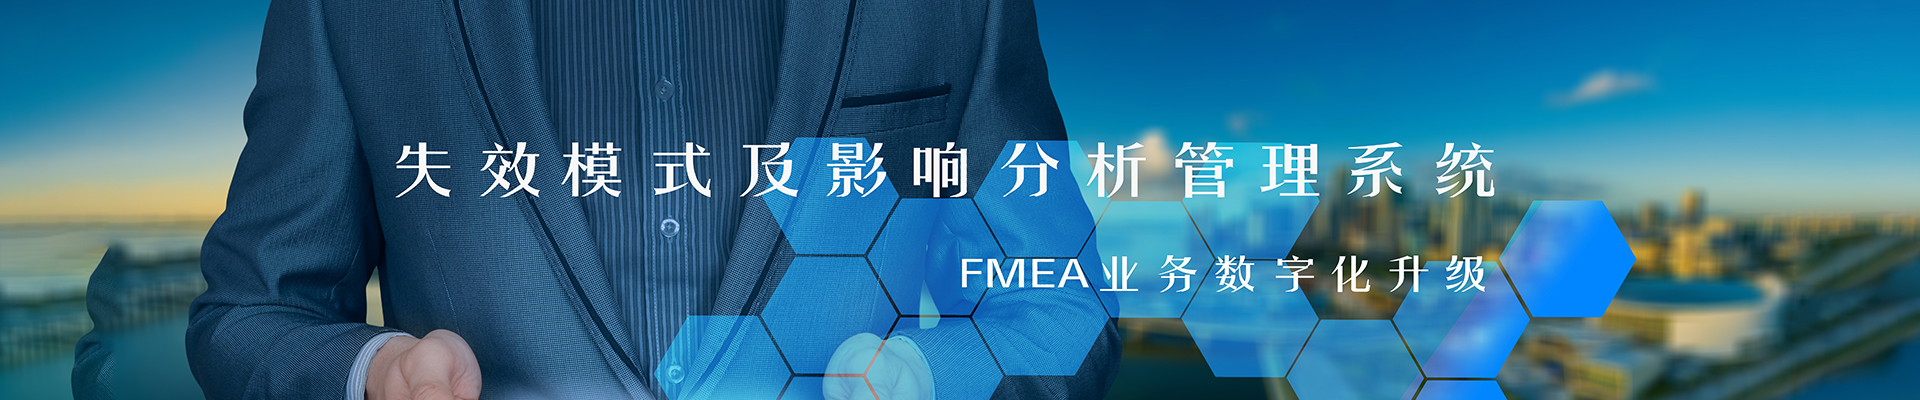 FMEA软件